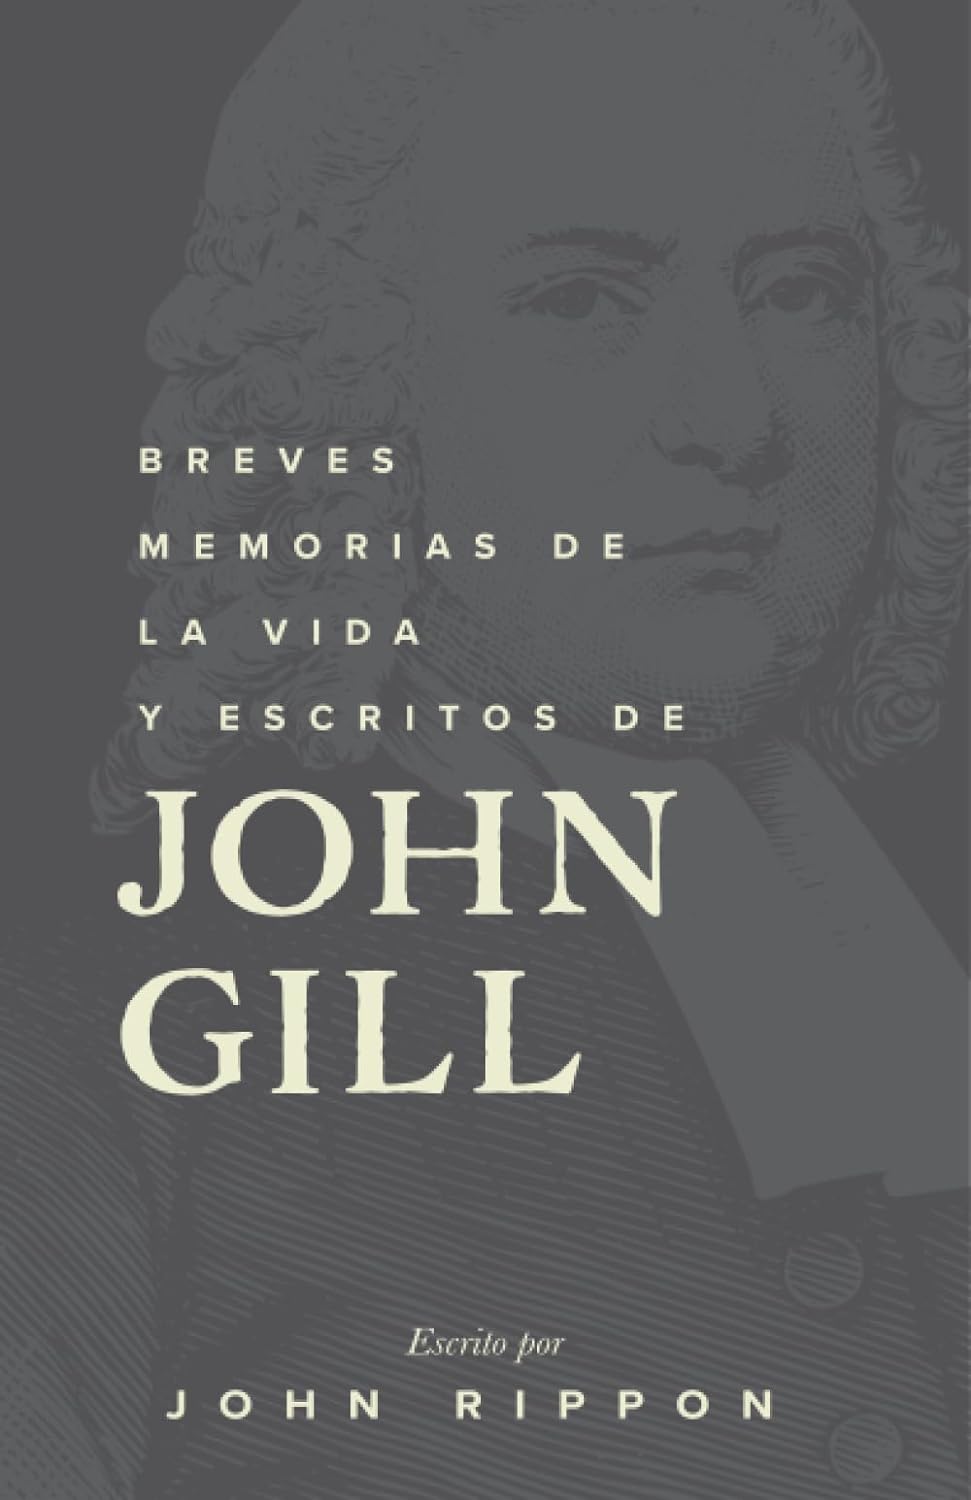 Breves memorias de la vida y escritos de John Gill